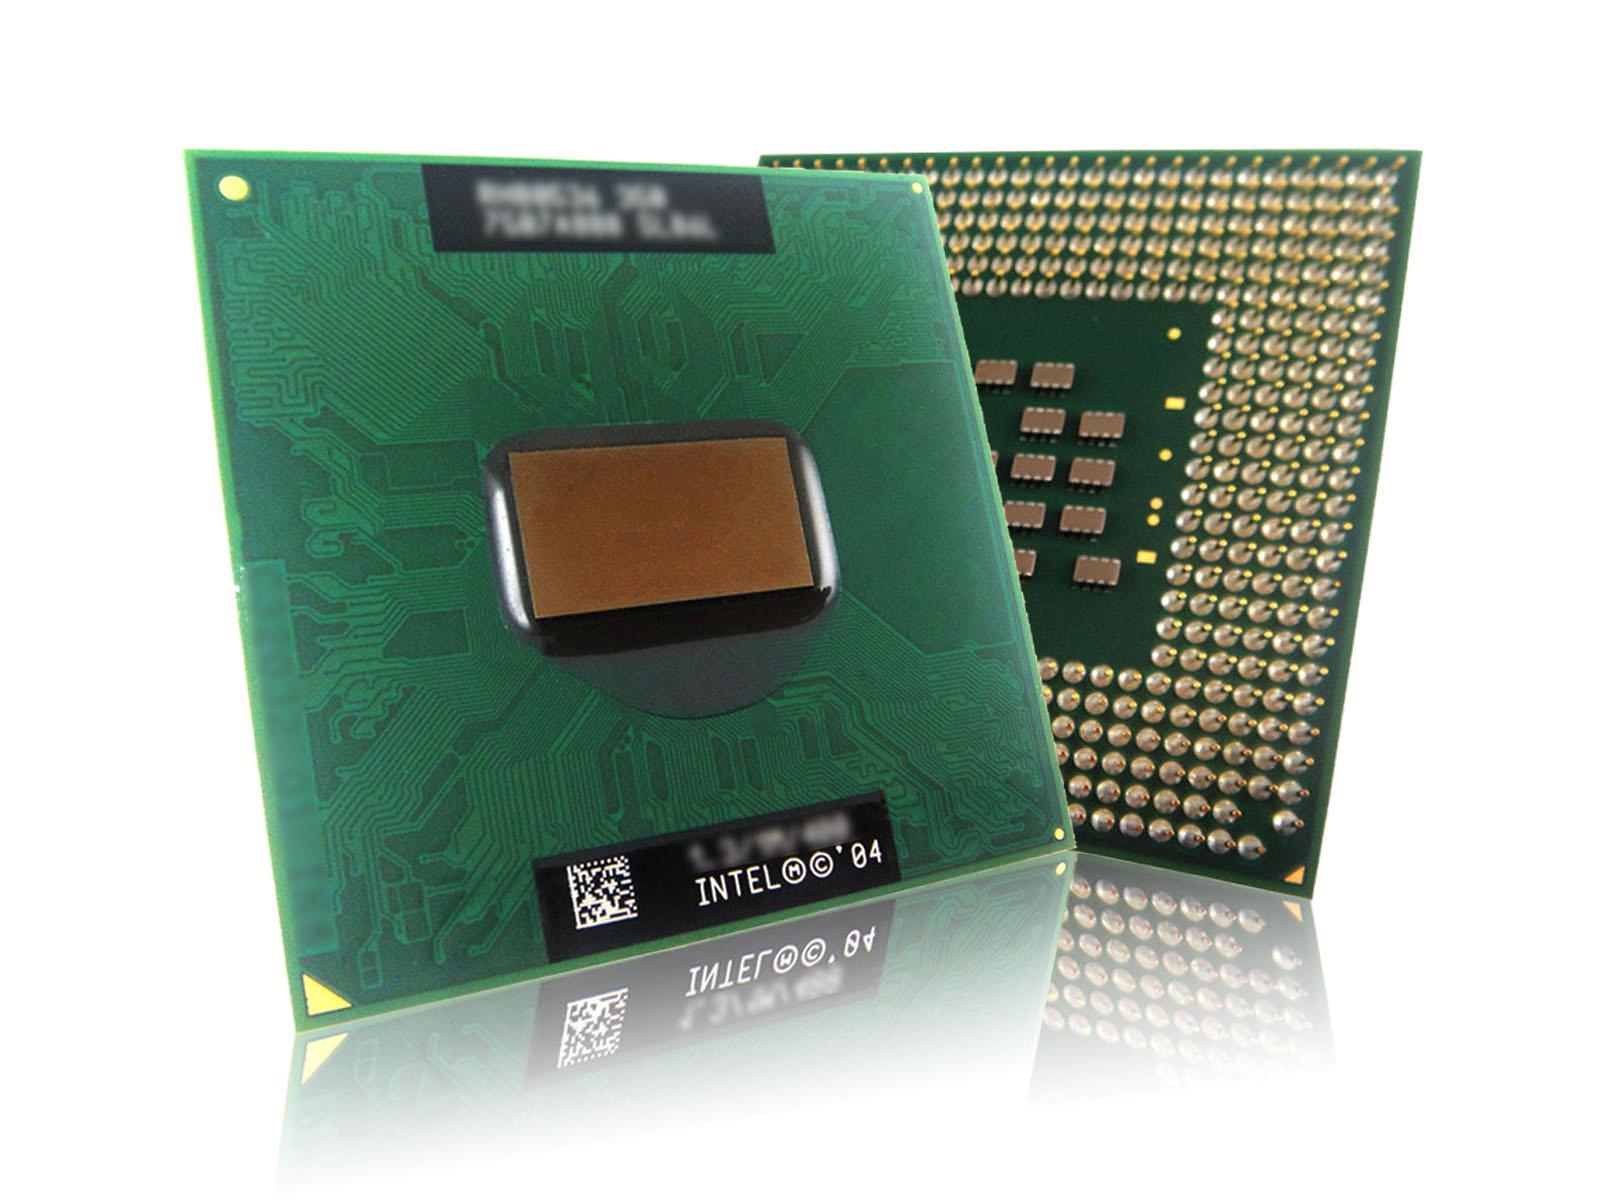 Pentium M 1.6G